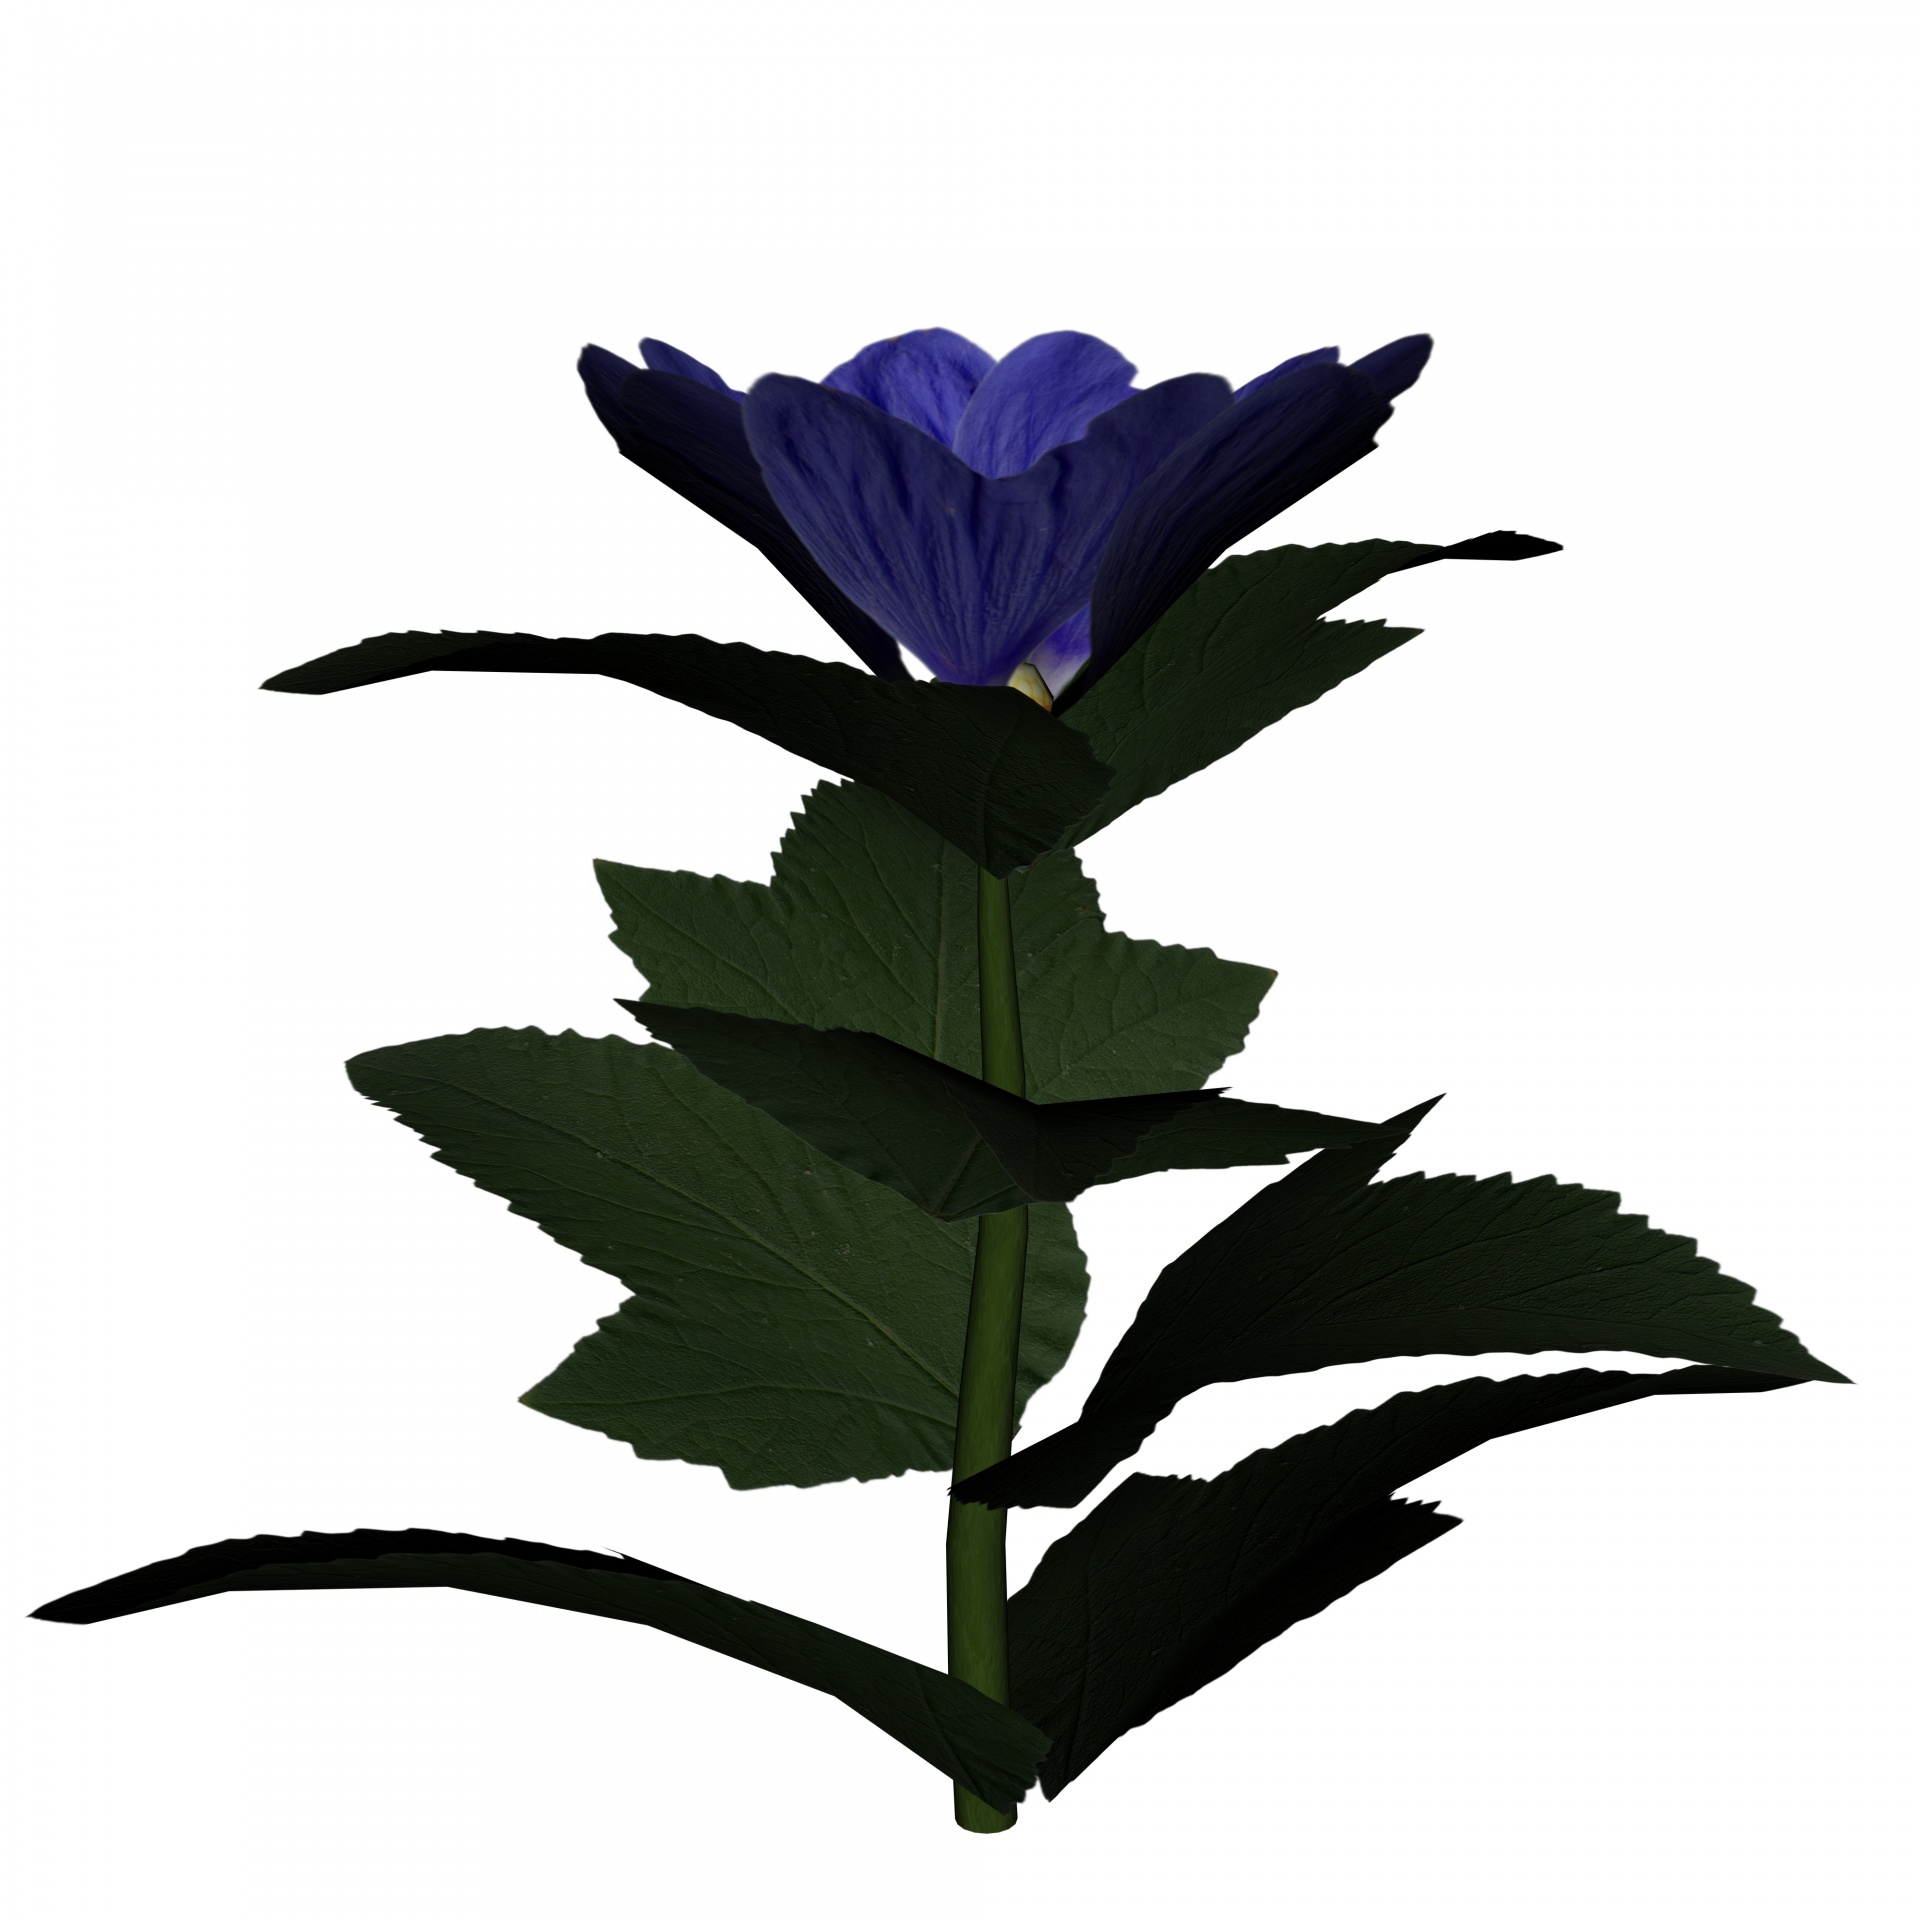 Blue Flower II